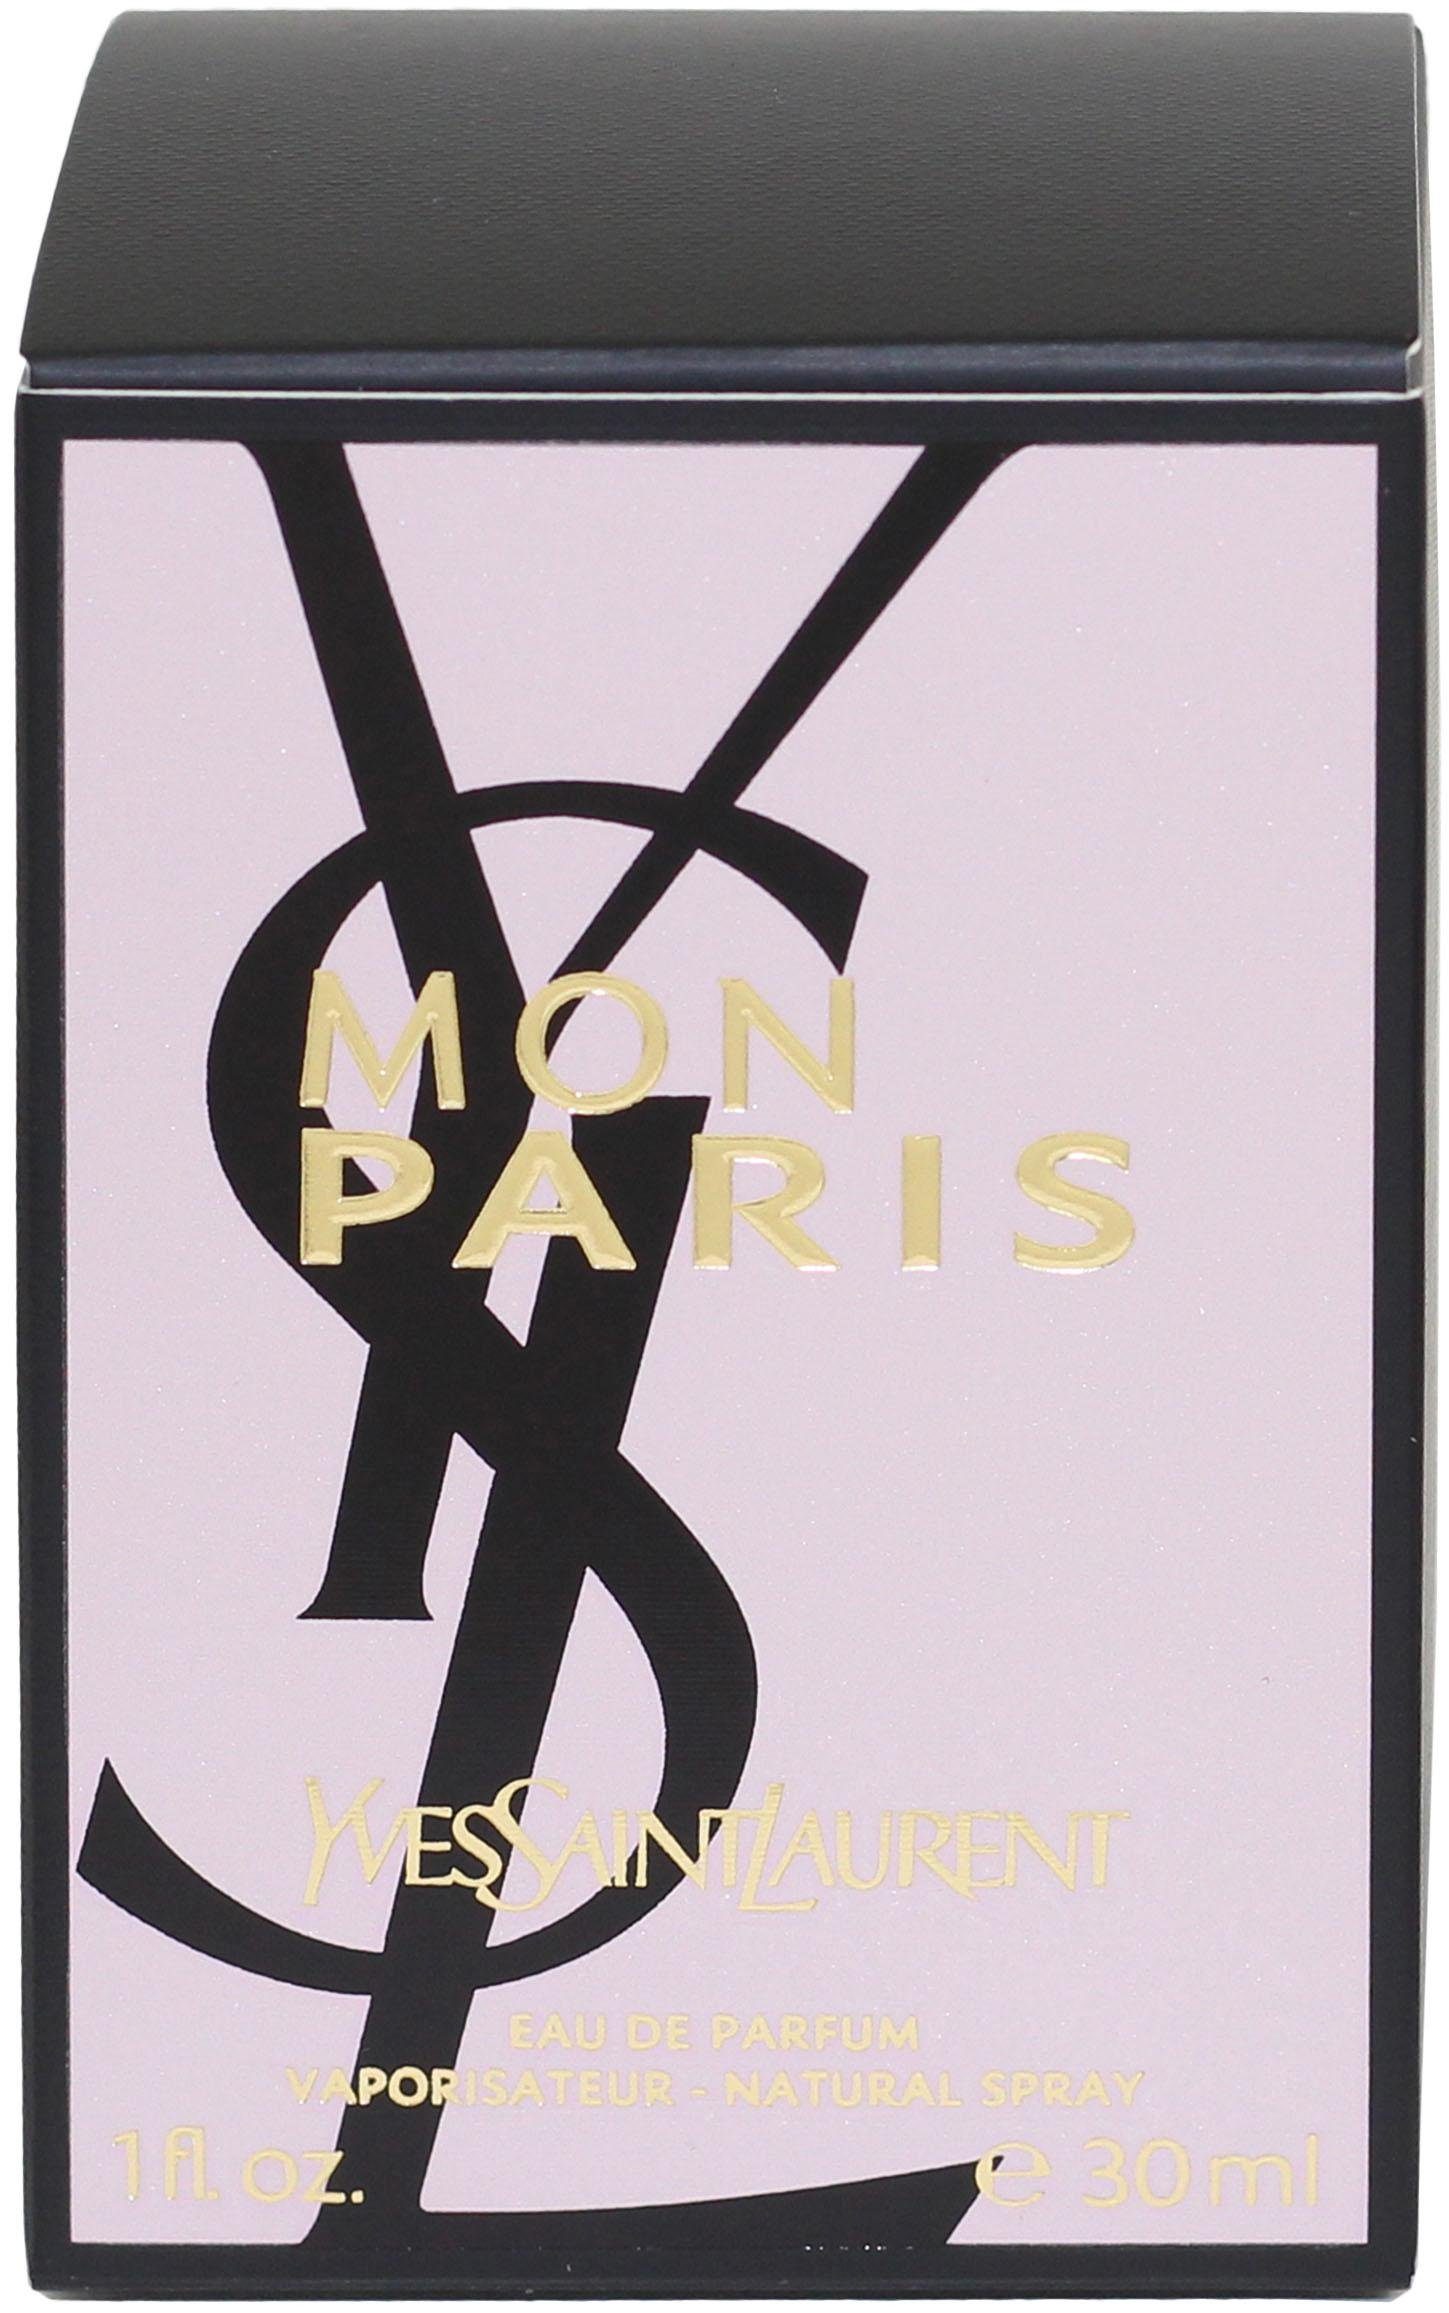 de SAINT YVES Parfum YSL Mon LAURENT Paris Eau